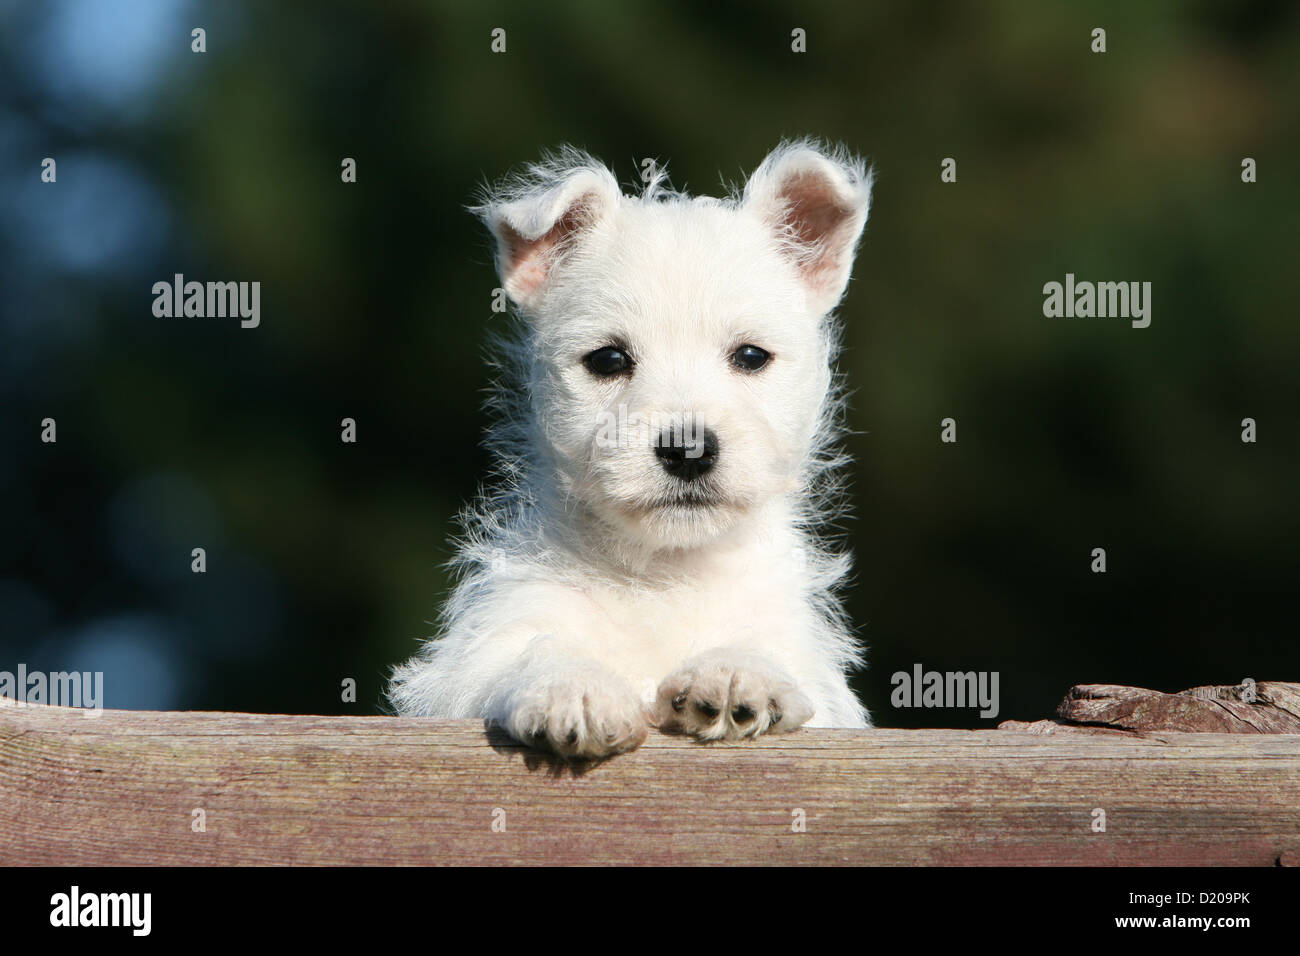 West Highland White Terrier chien / chiot Westie sur un bois Banque D'Images